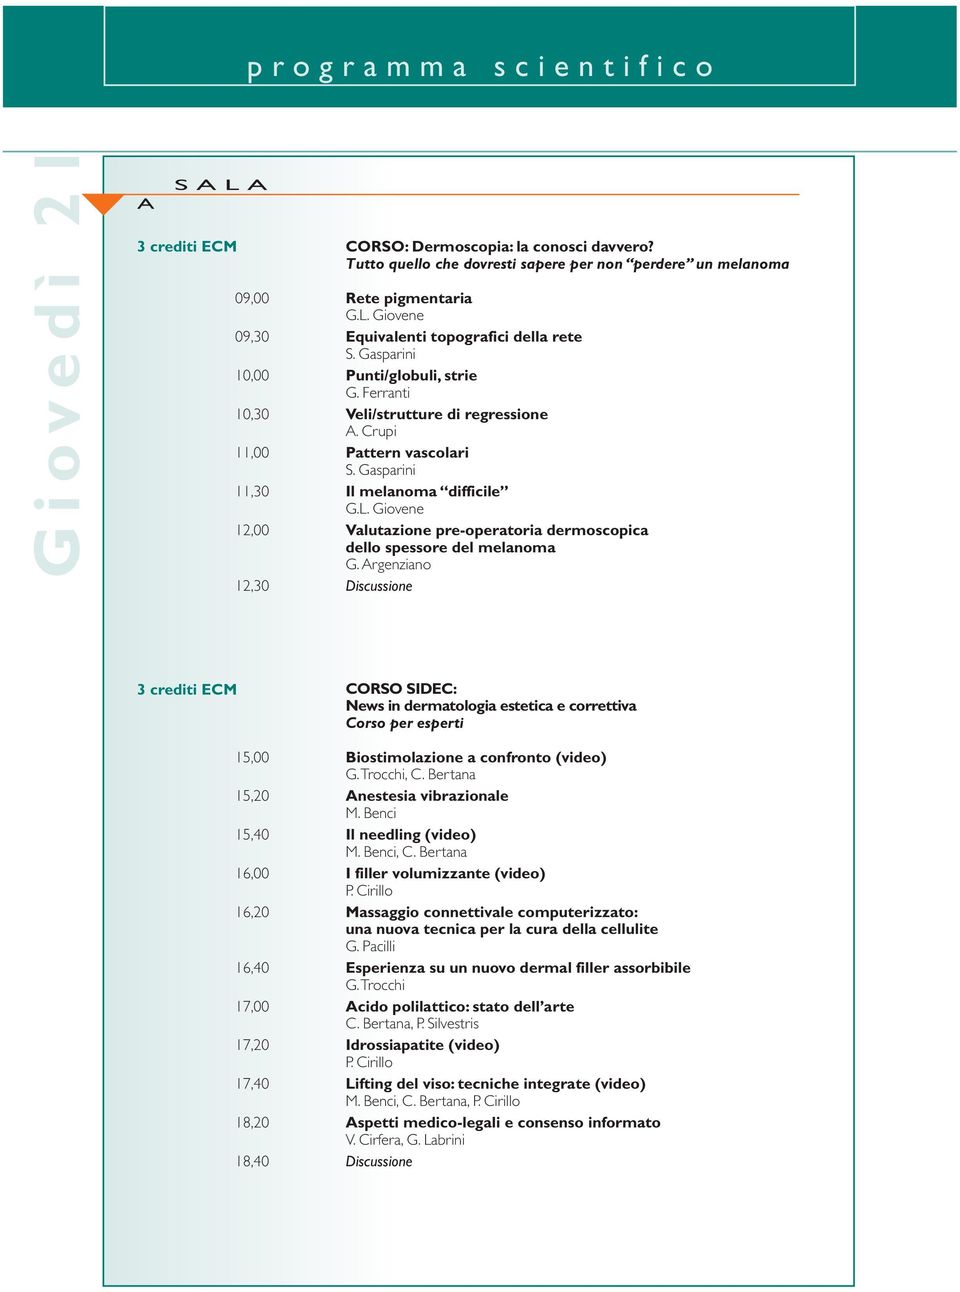 Gasparini 11,30 Il melanoma difficile G.L. Giovene 12,00 Valutazione pre-operatoria dermoscopica dello spessore del melanoma G.